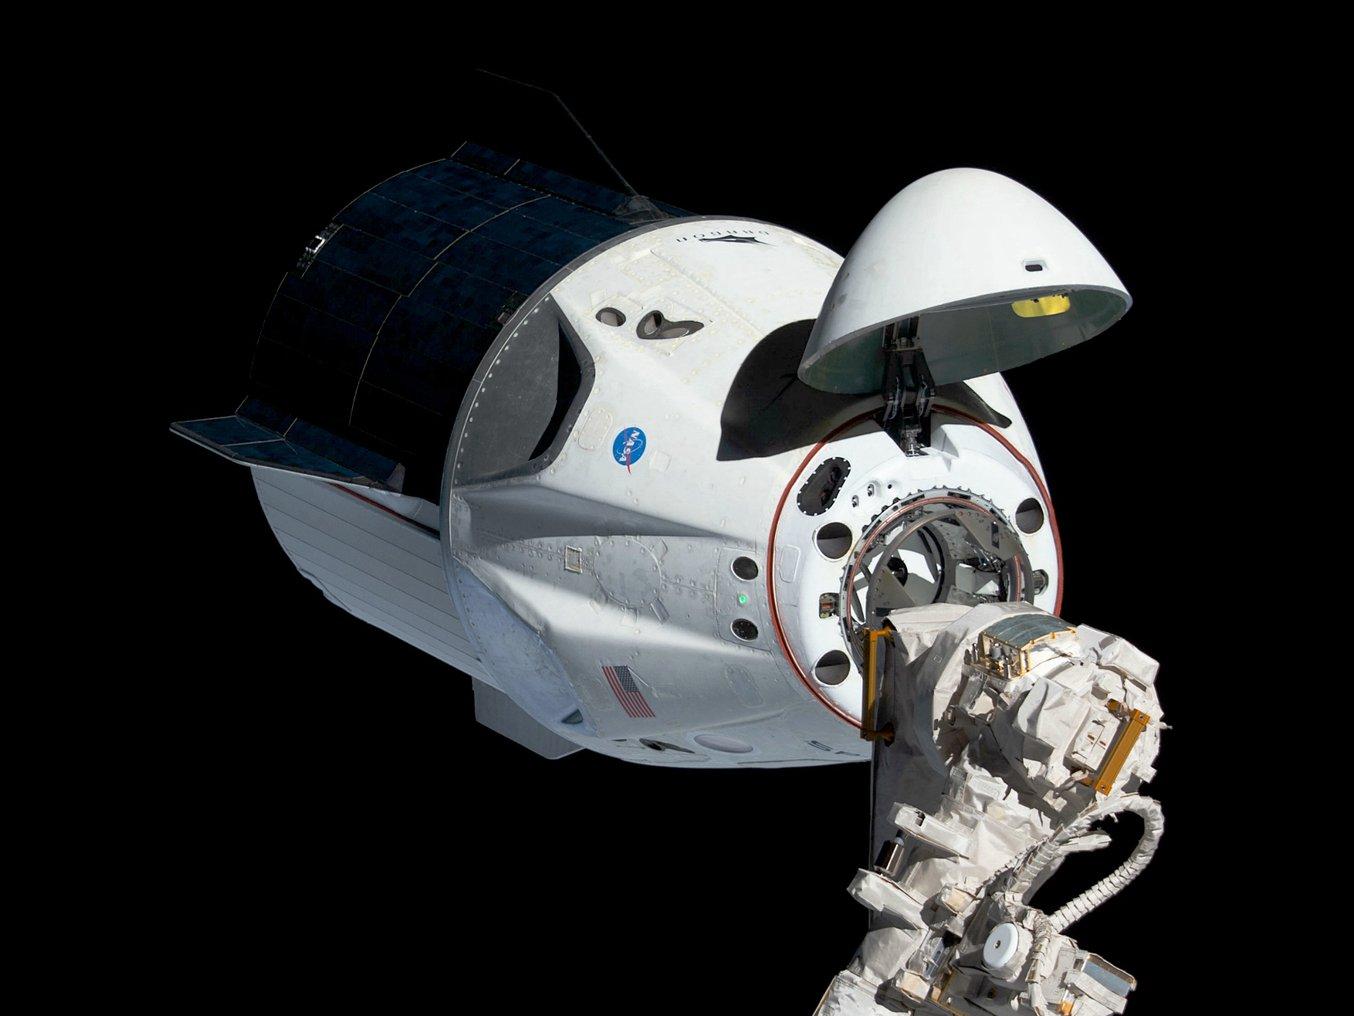 Une capsule Dragon de SpaceX. Photo gracieuseté du Goddard Space Flight Center de la NASA.